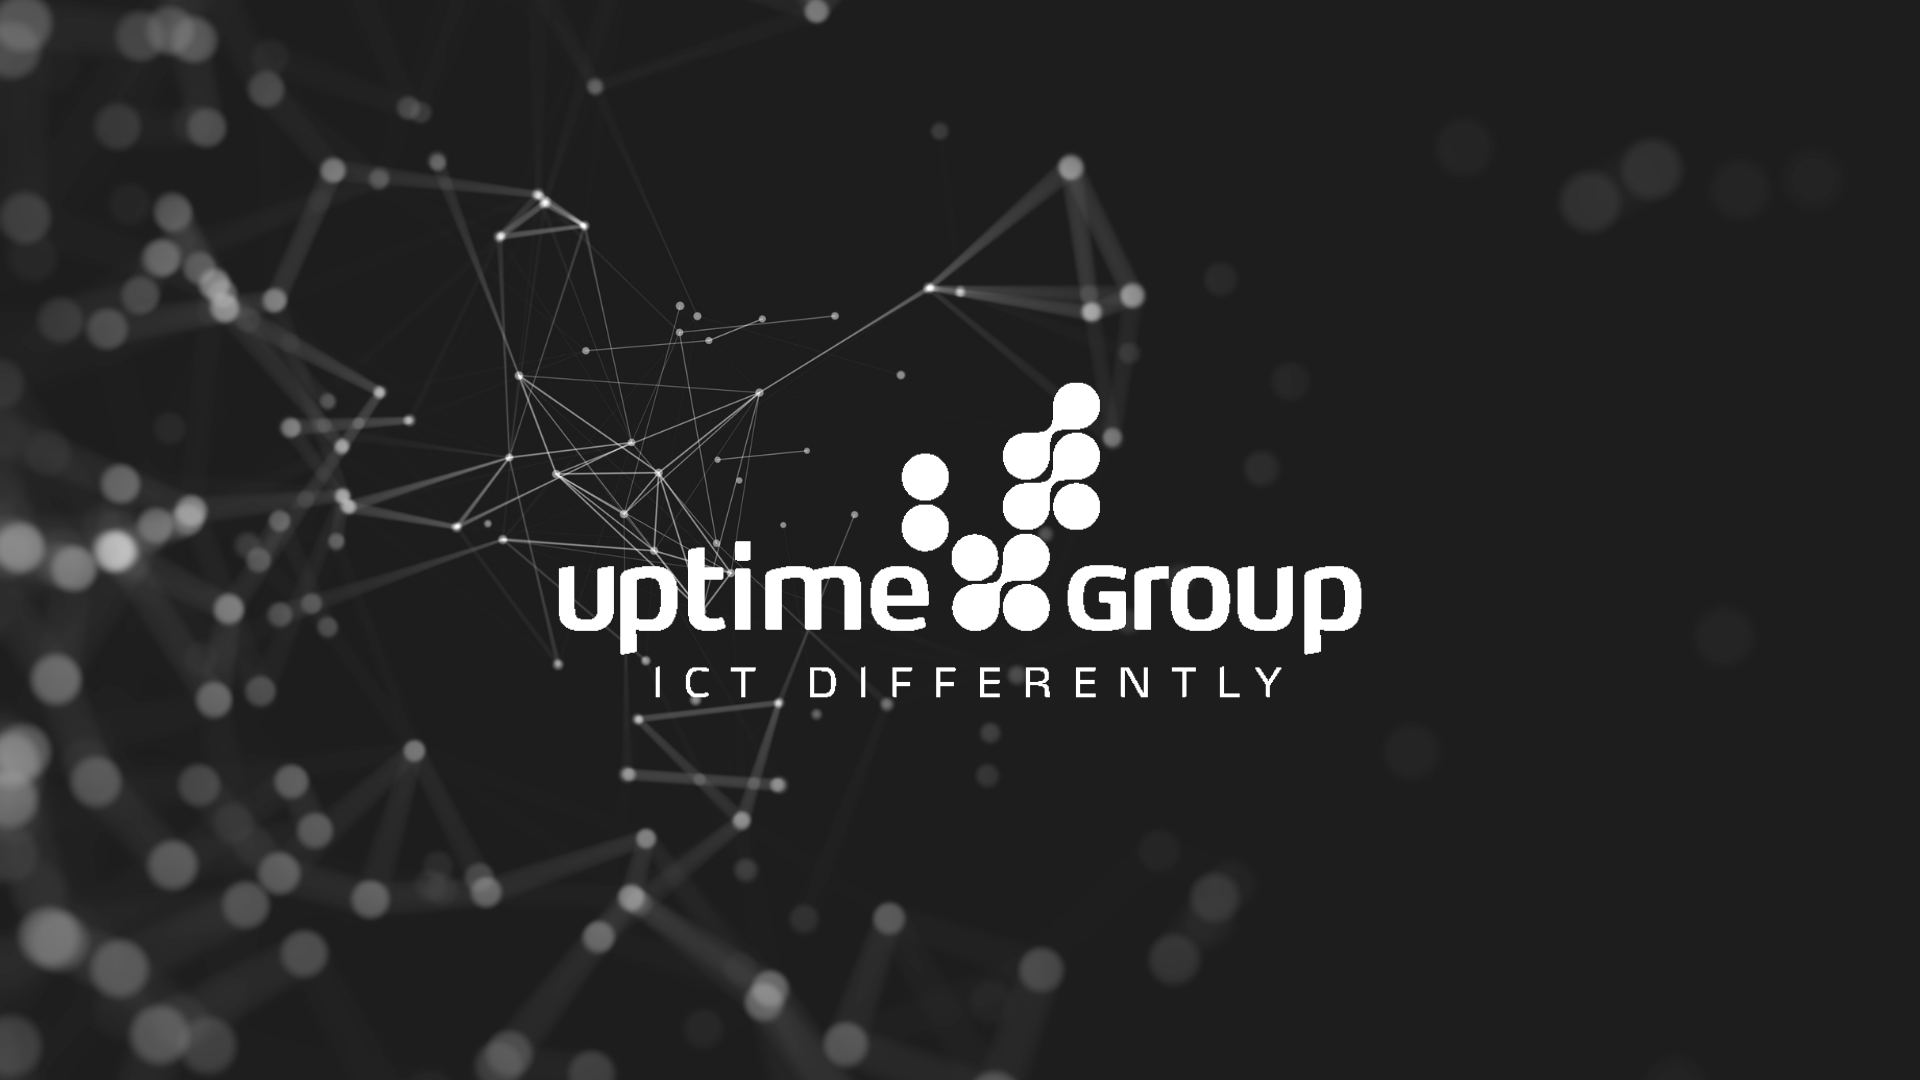 (c) Uptimegroup.be